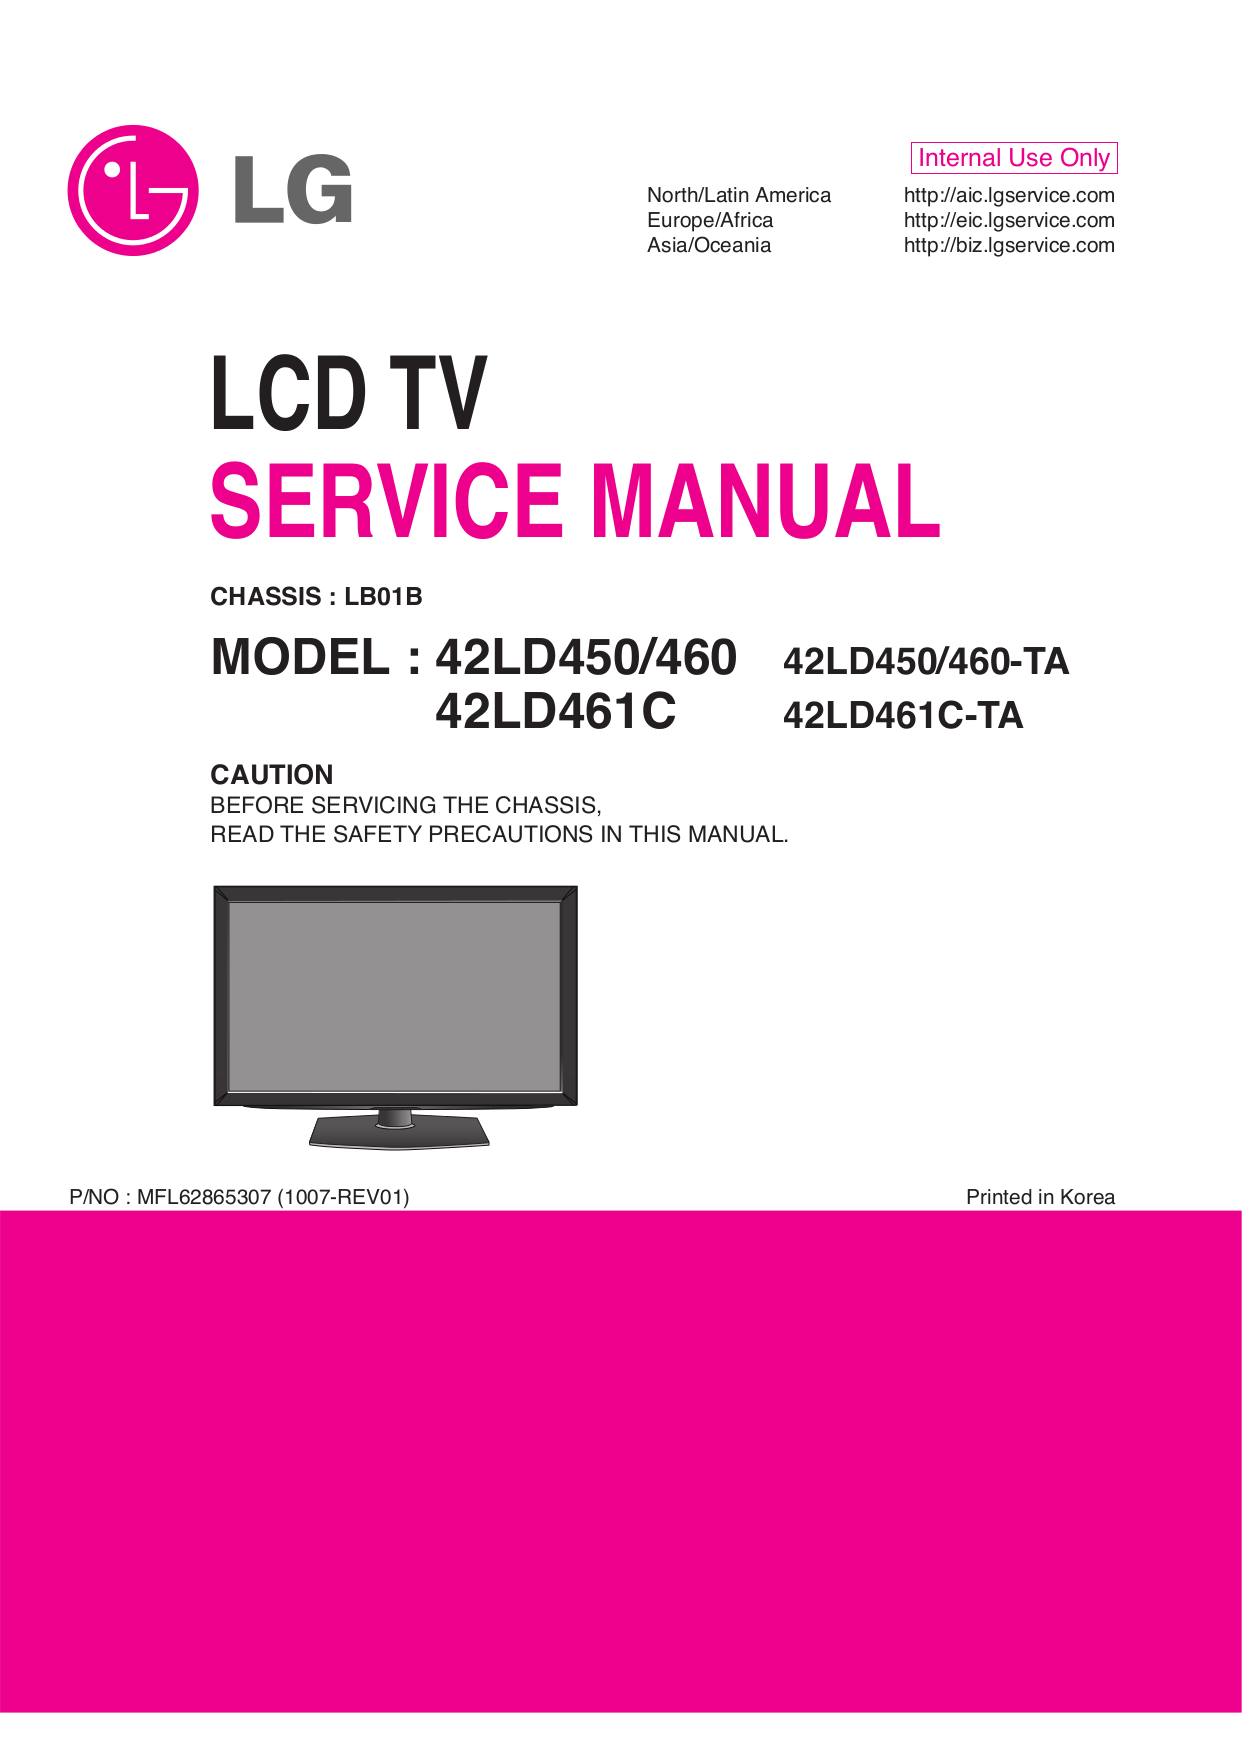 lg tv service manual pdf free download